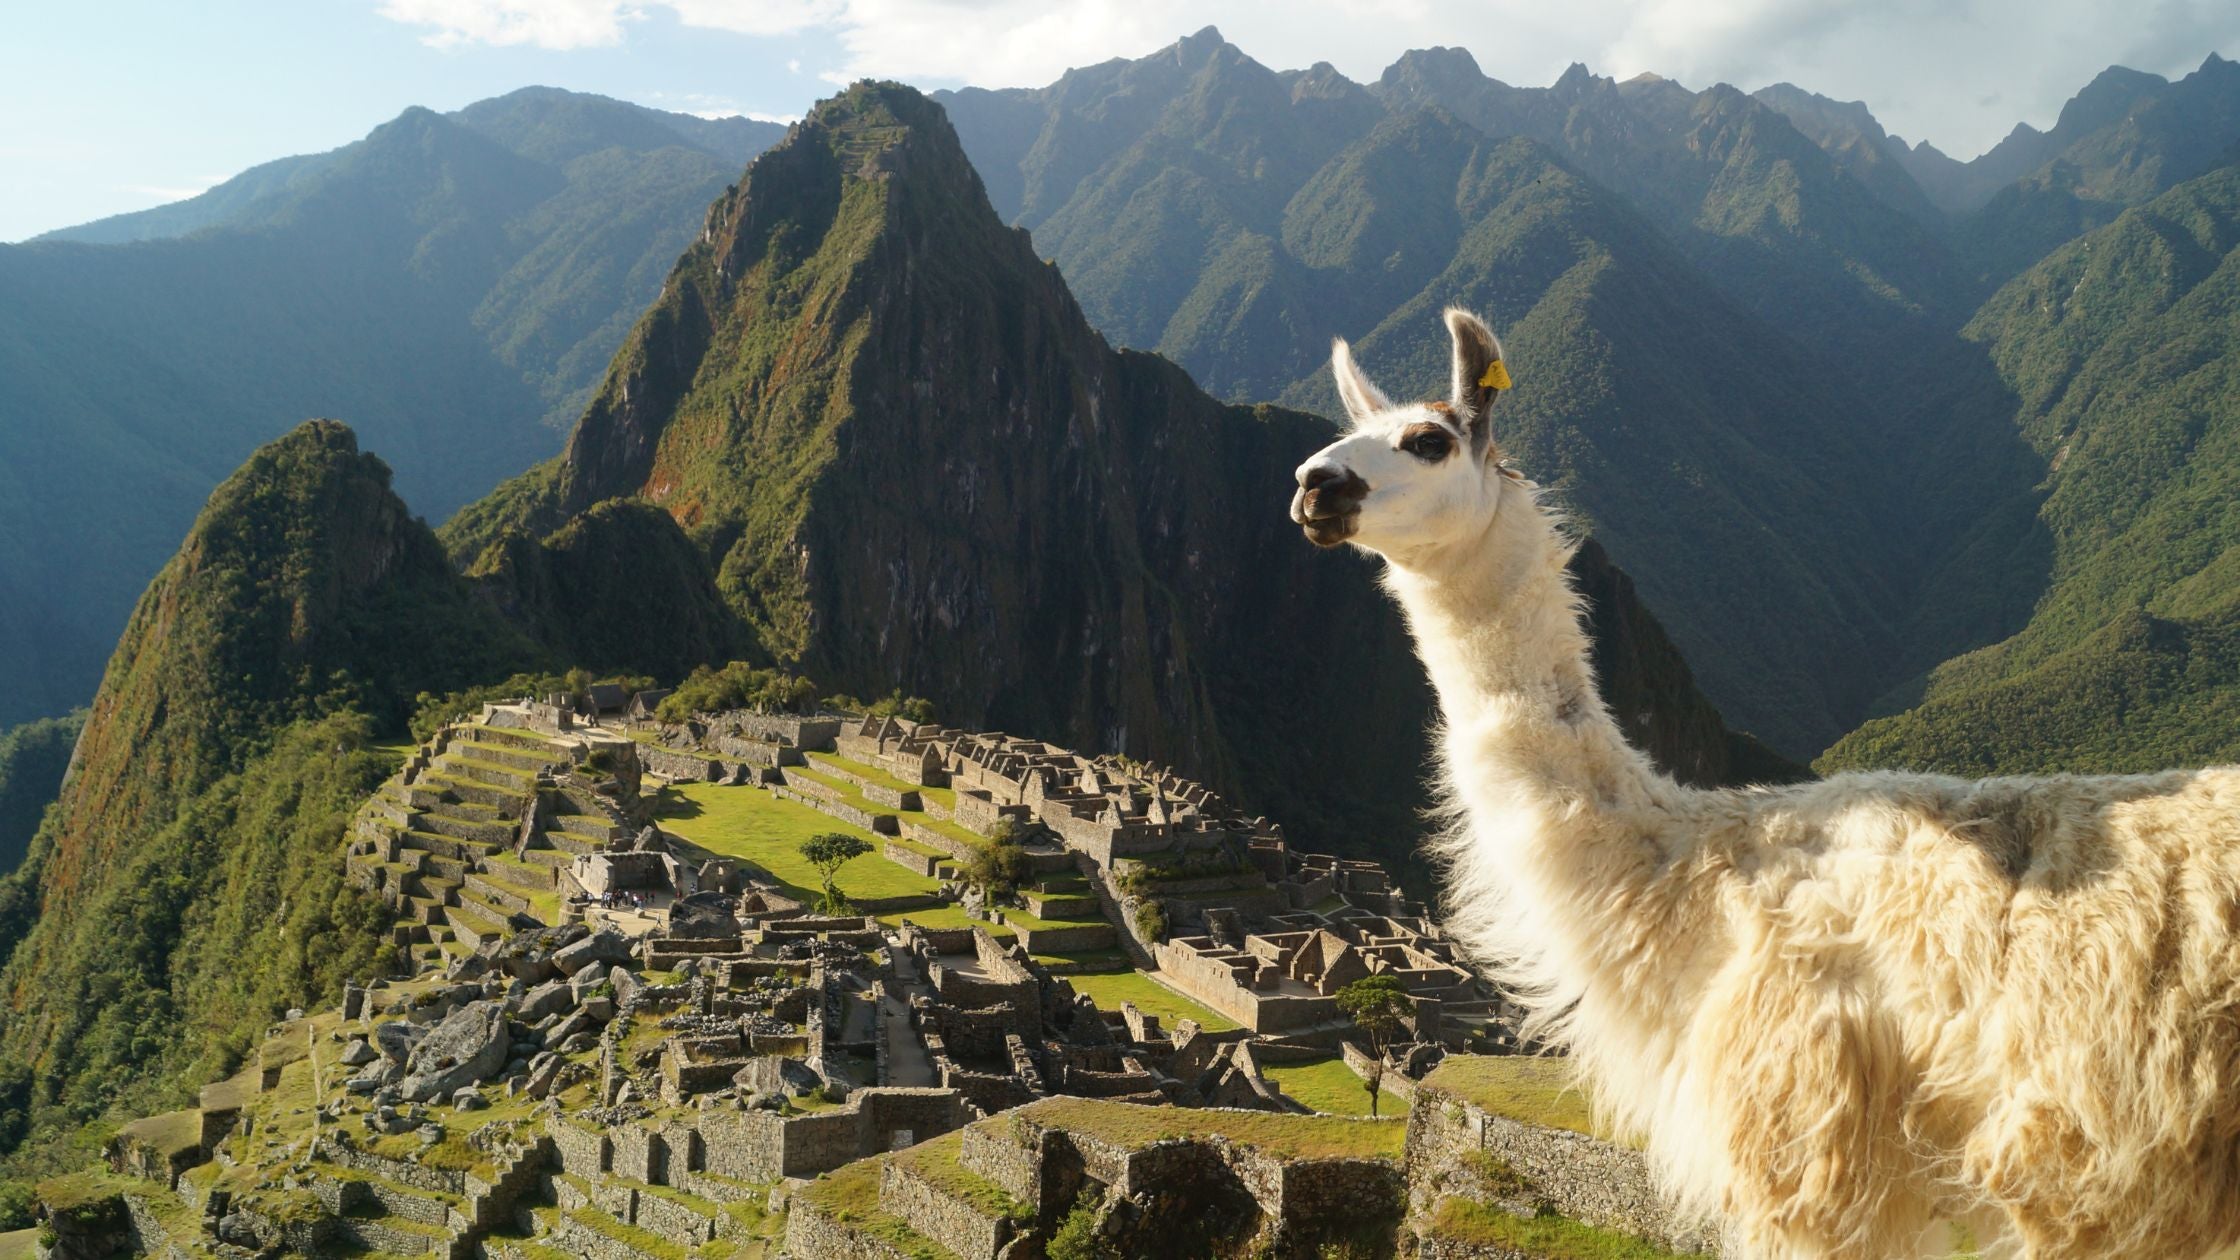 Llama standing above Machu Picchu ancient ruins in Peru